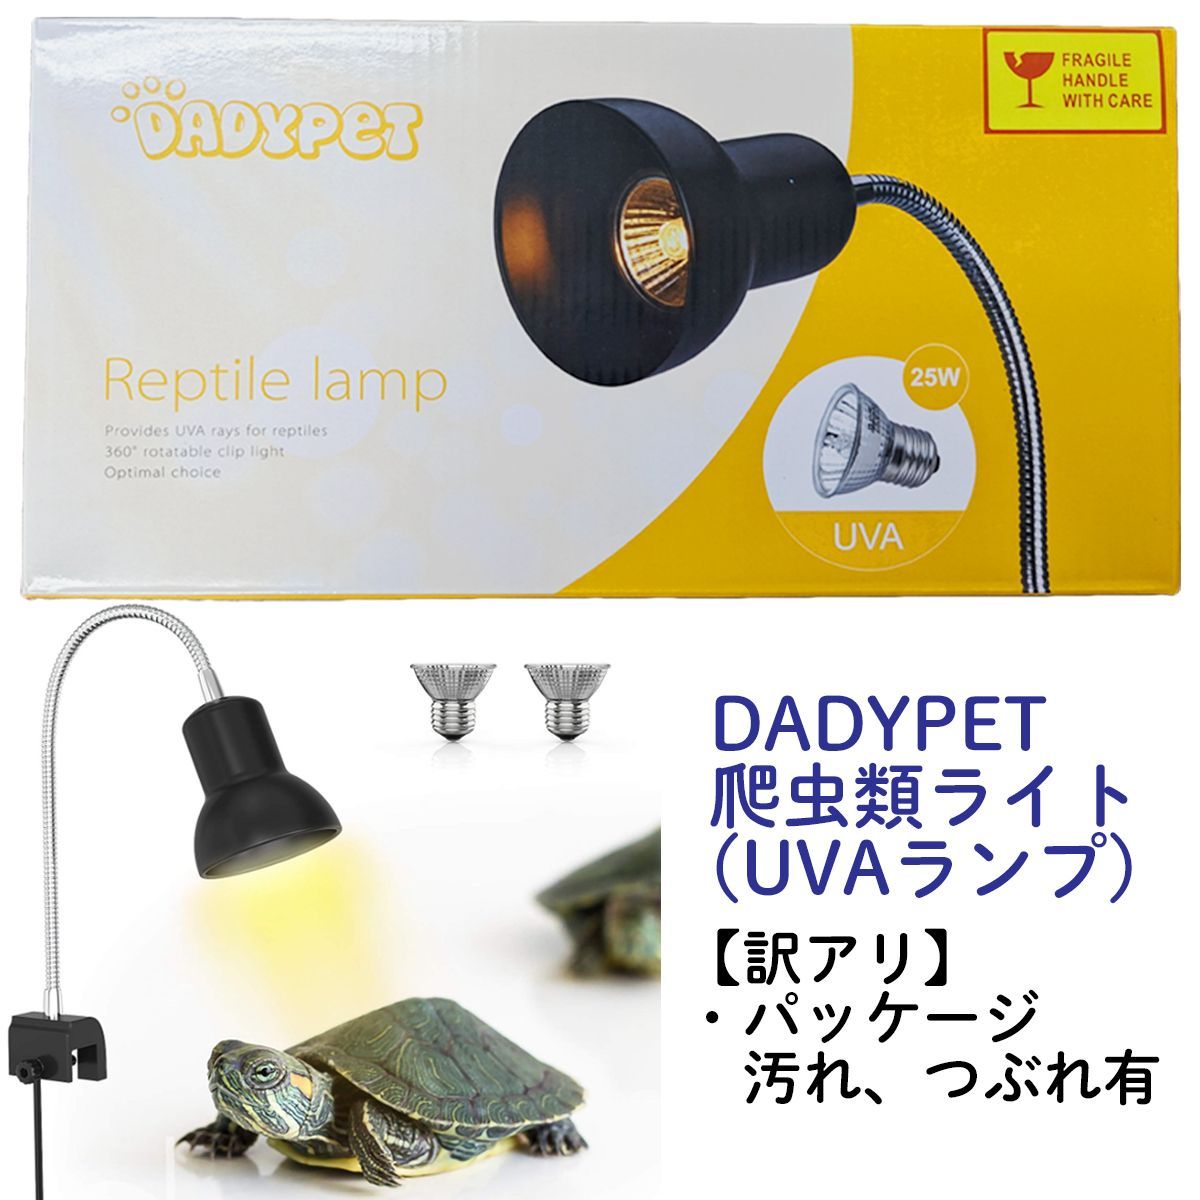 訳アリ品】DADYPET (ダディーペット) 爬虫類ライト 爬虫類用ランプ UVA